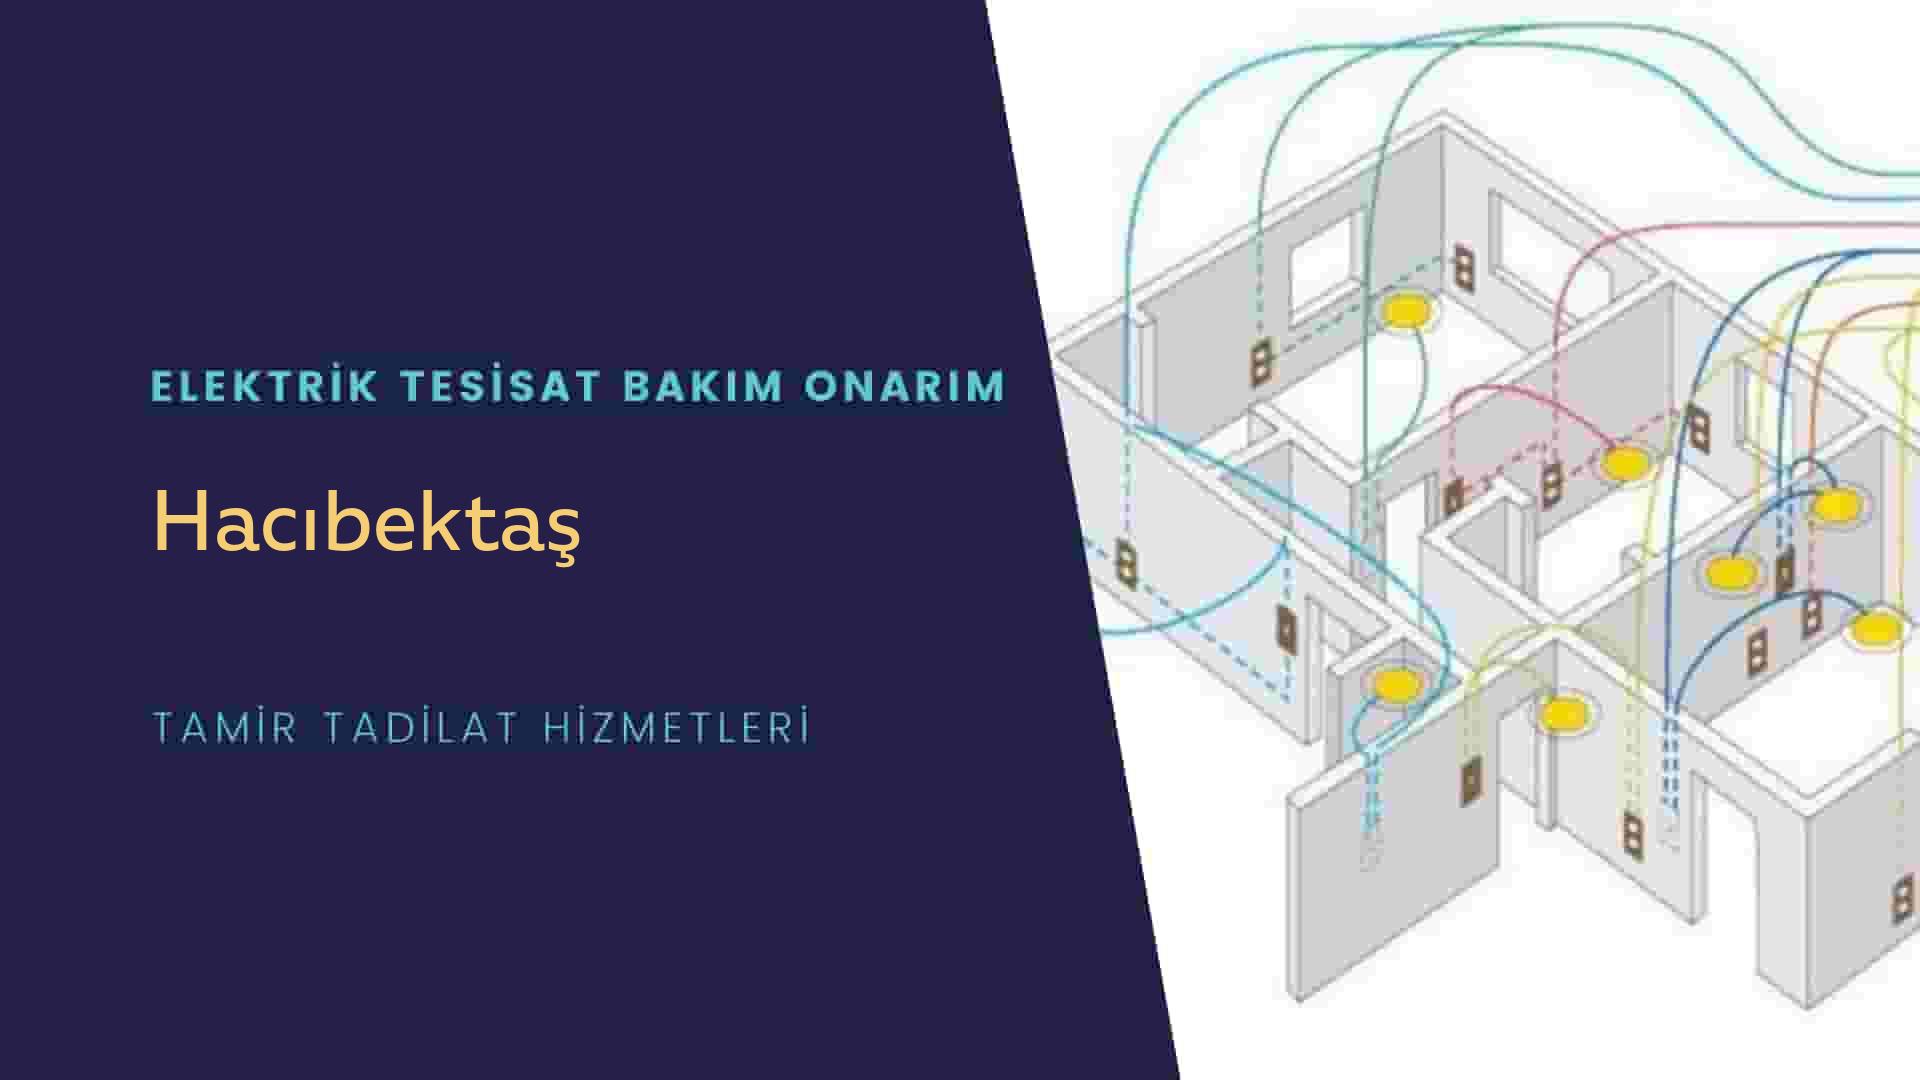 Hacıbektaş'ta elektrik tesisatı ustalarımı arıyorsunuz doğru adrestenizi Hacıbektaş elektrik tesisatı ustalarımız 7/24 sizlere hizmet vermekten mutluluk duyar.